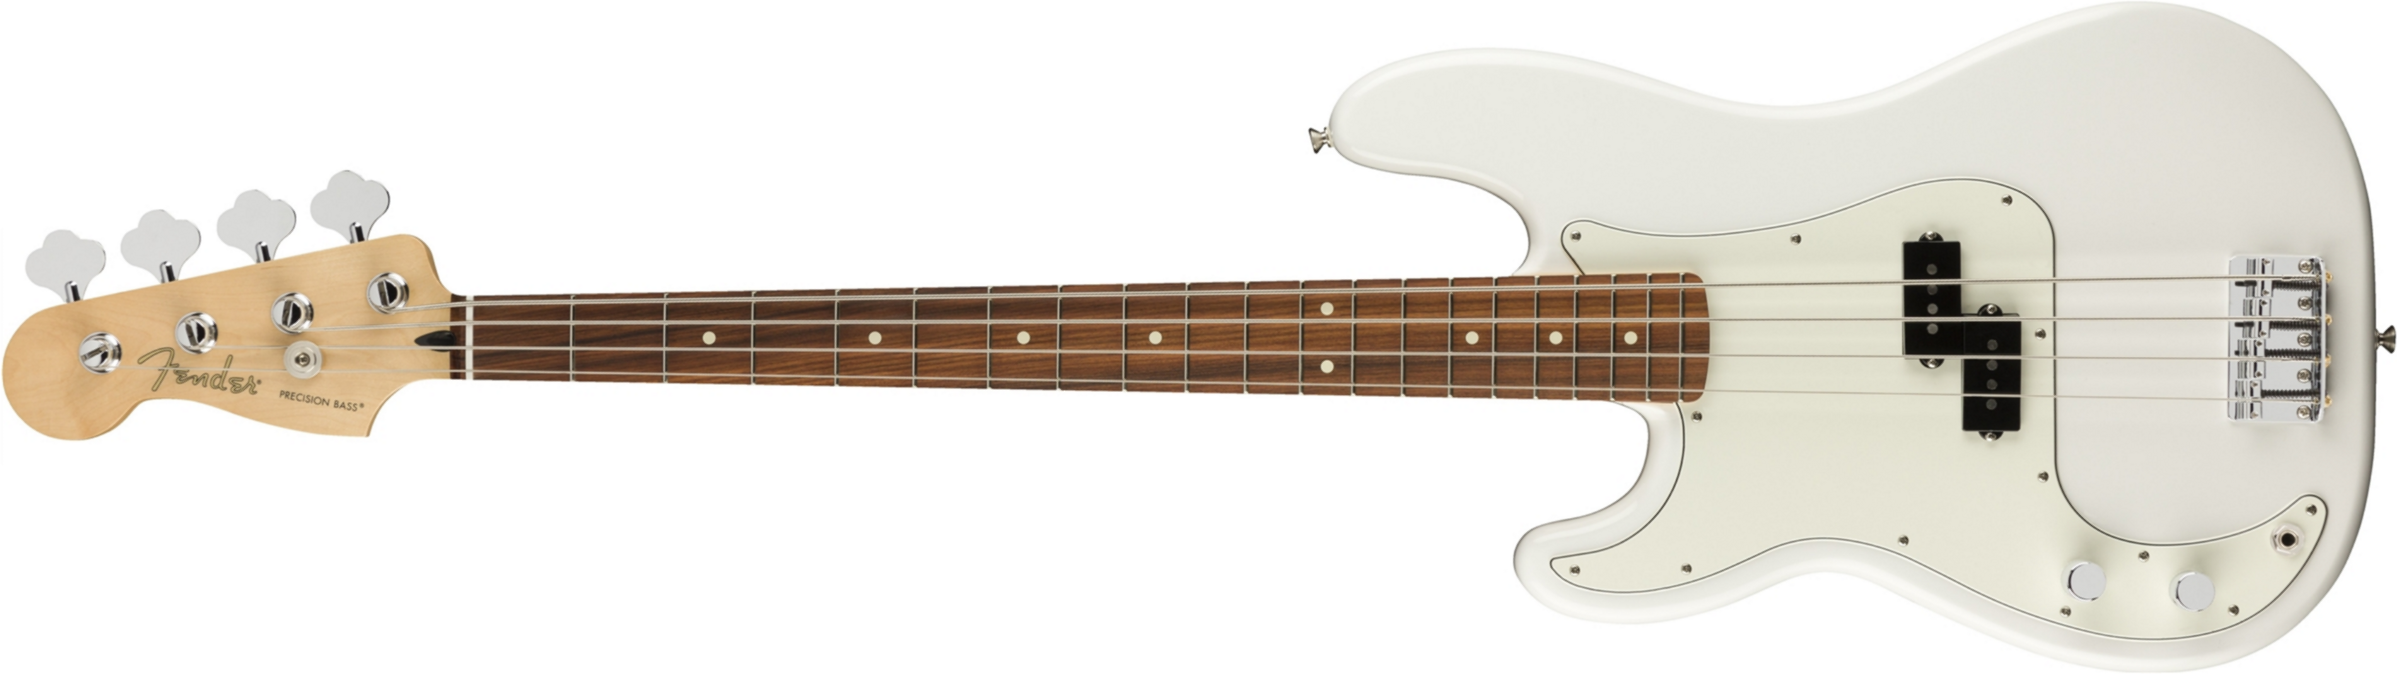 Fender Precision Bass Player Lh Gaucher Mex Pf - Polar White - Solid body elektrische bas - Main picture